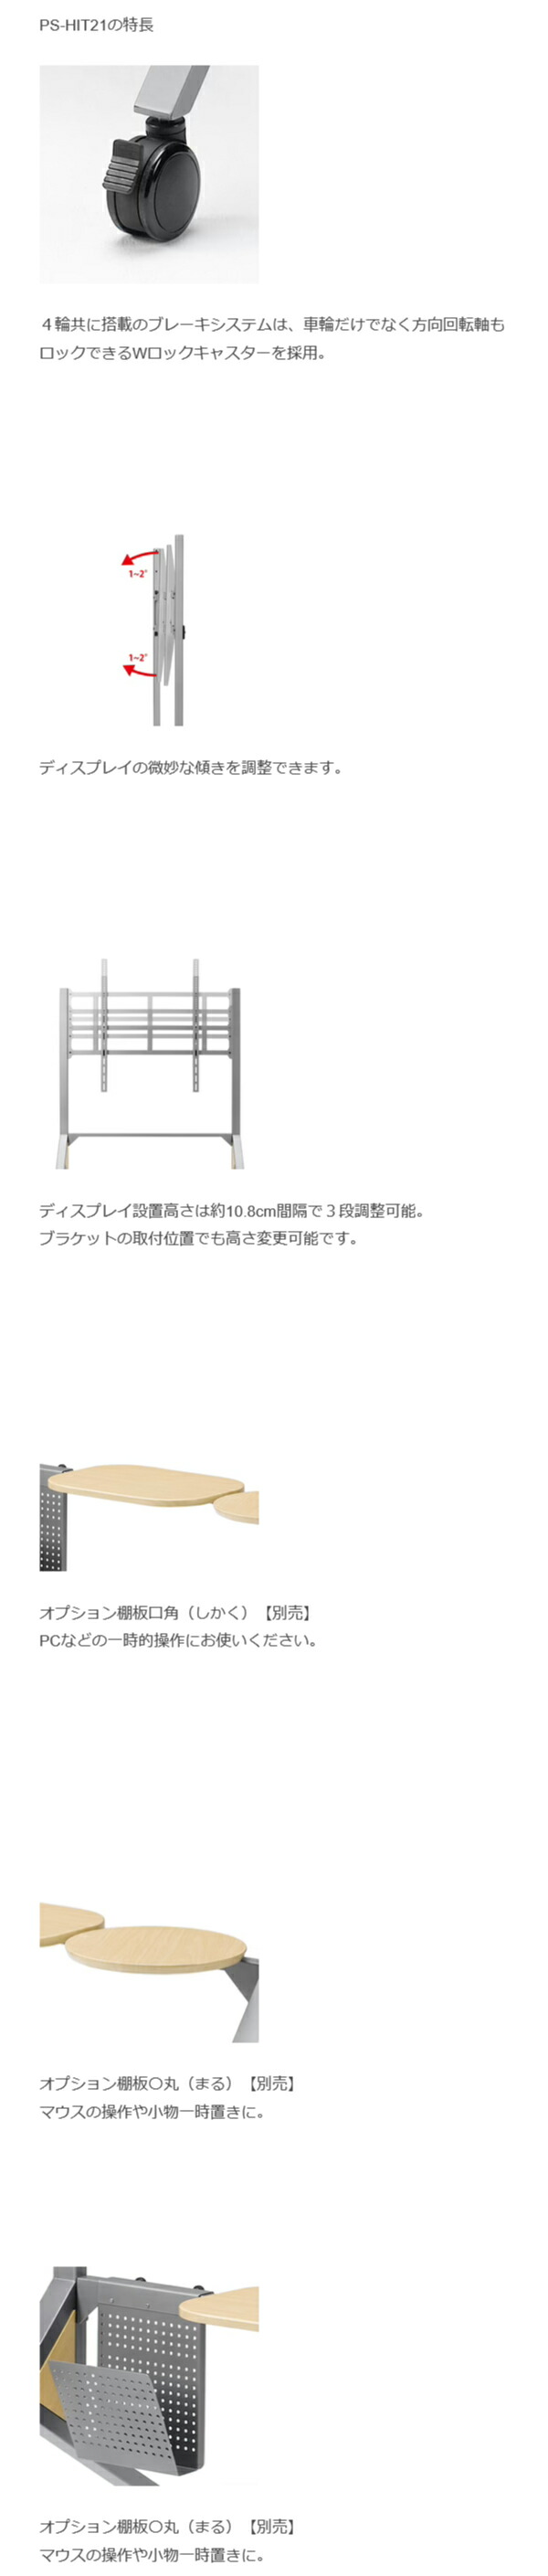 木製サイネージスタンド ~100型インチ対応 HIT ヒト21 (PS-HIT21) 朝日